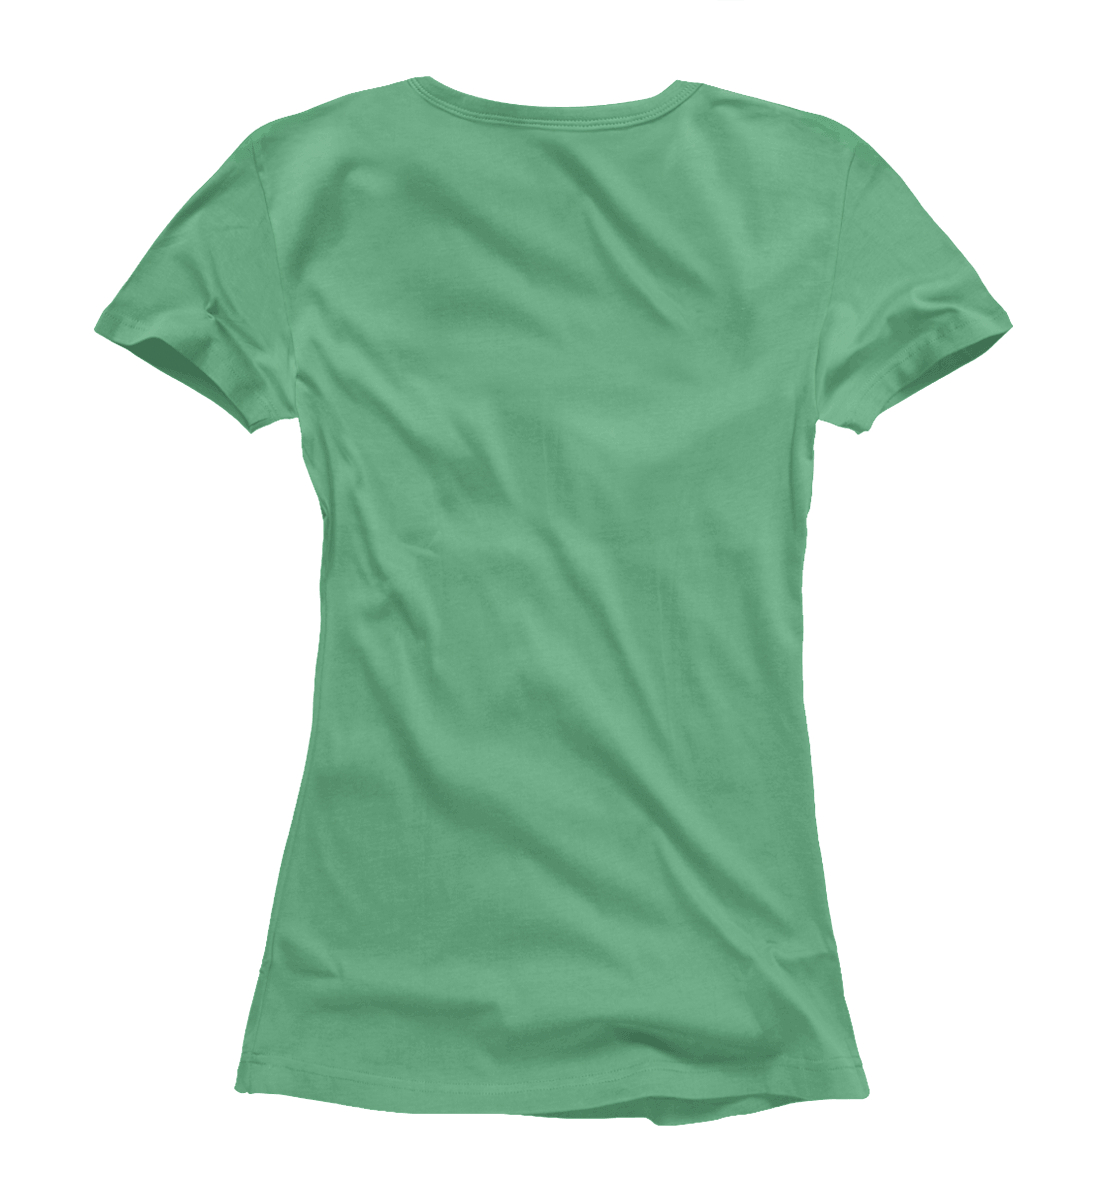 Женская Футболка Цвет Морской зеленый, артикул CLR-317403-fut-1mp - фото 2